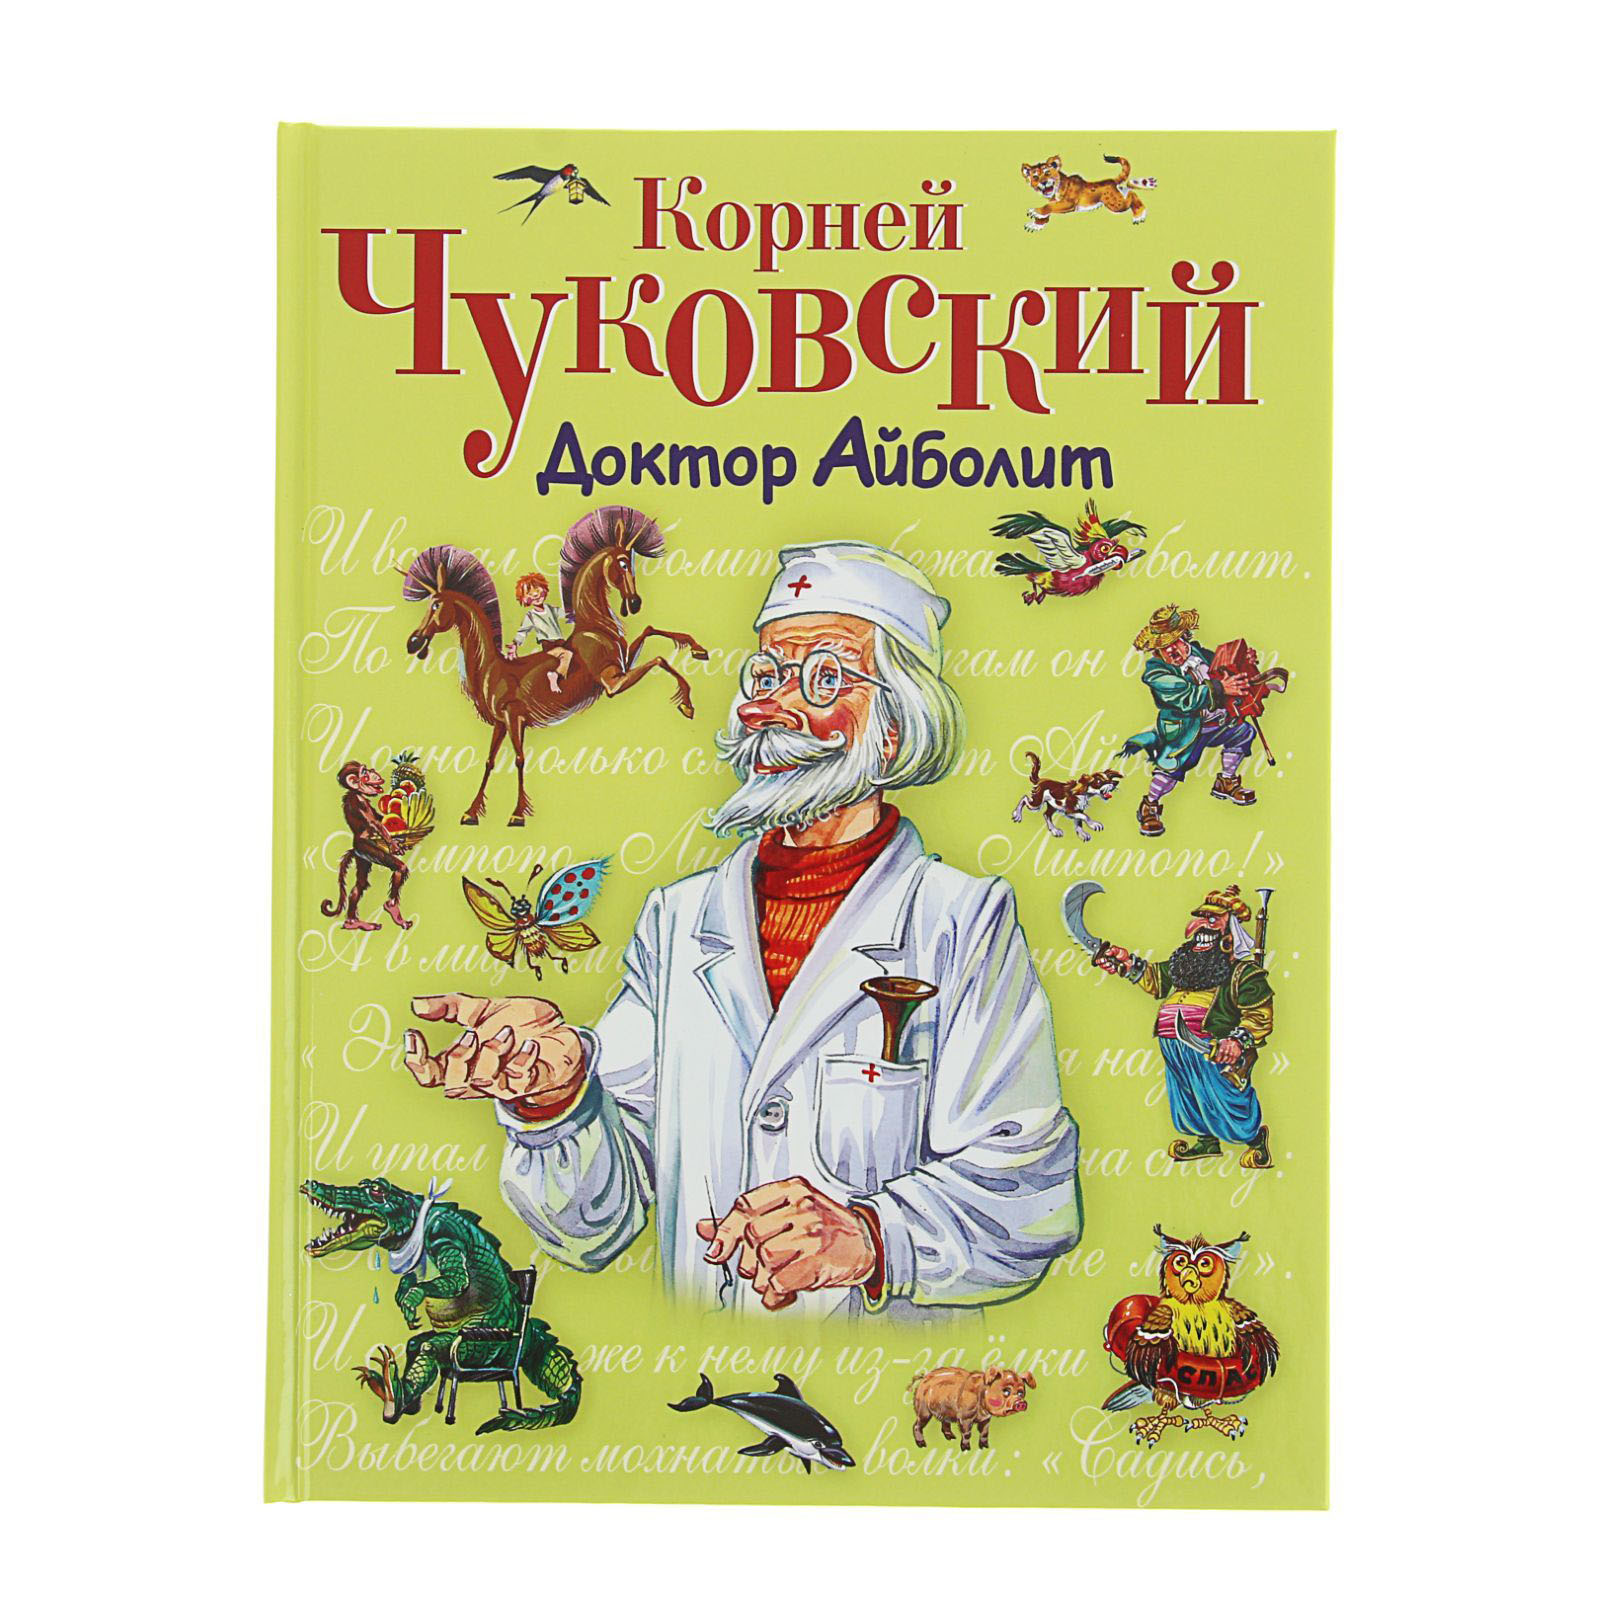 Книжка корней Чуковский доктор Айболит